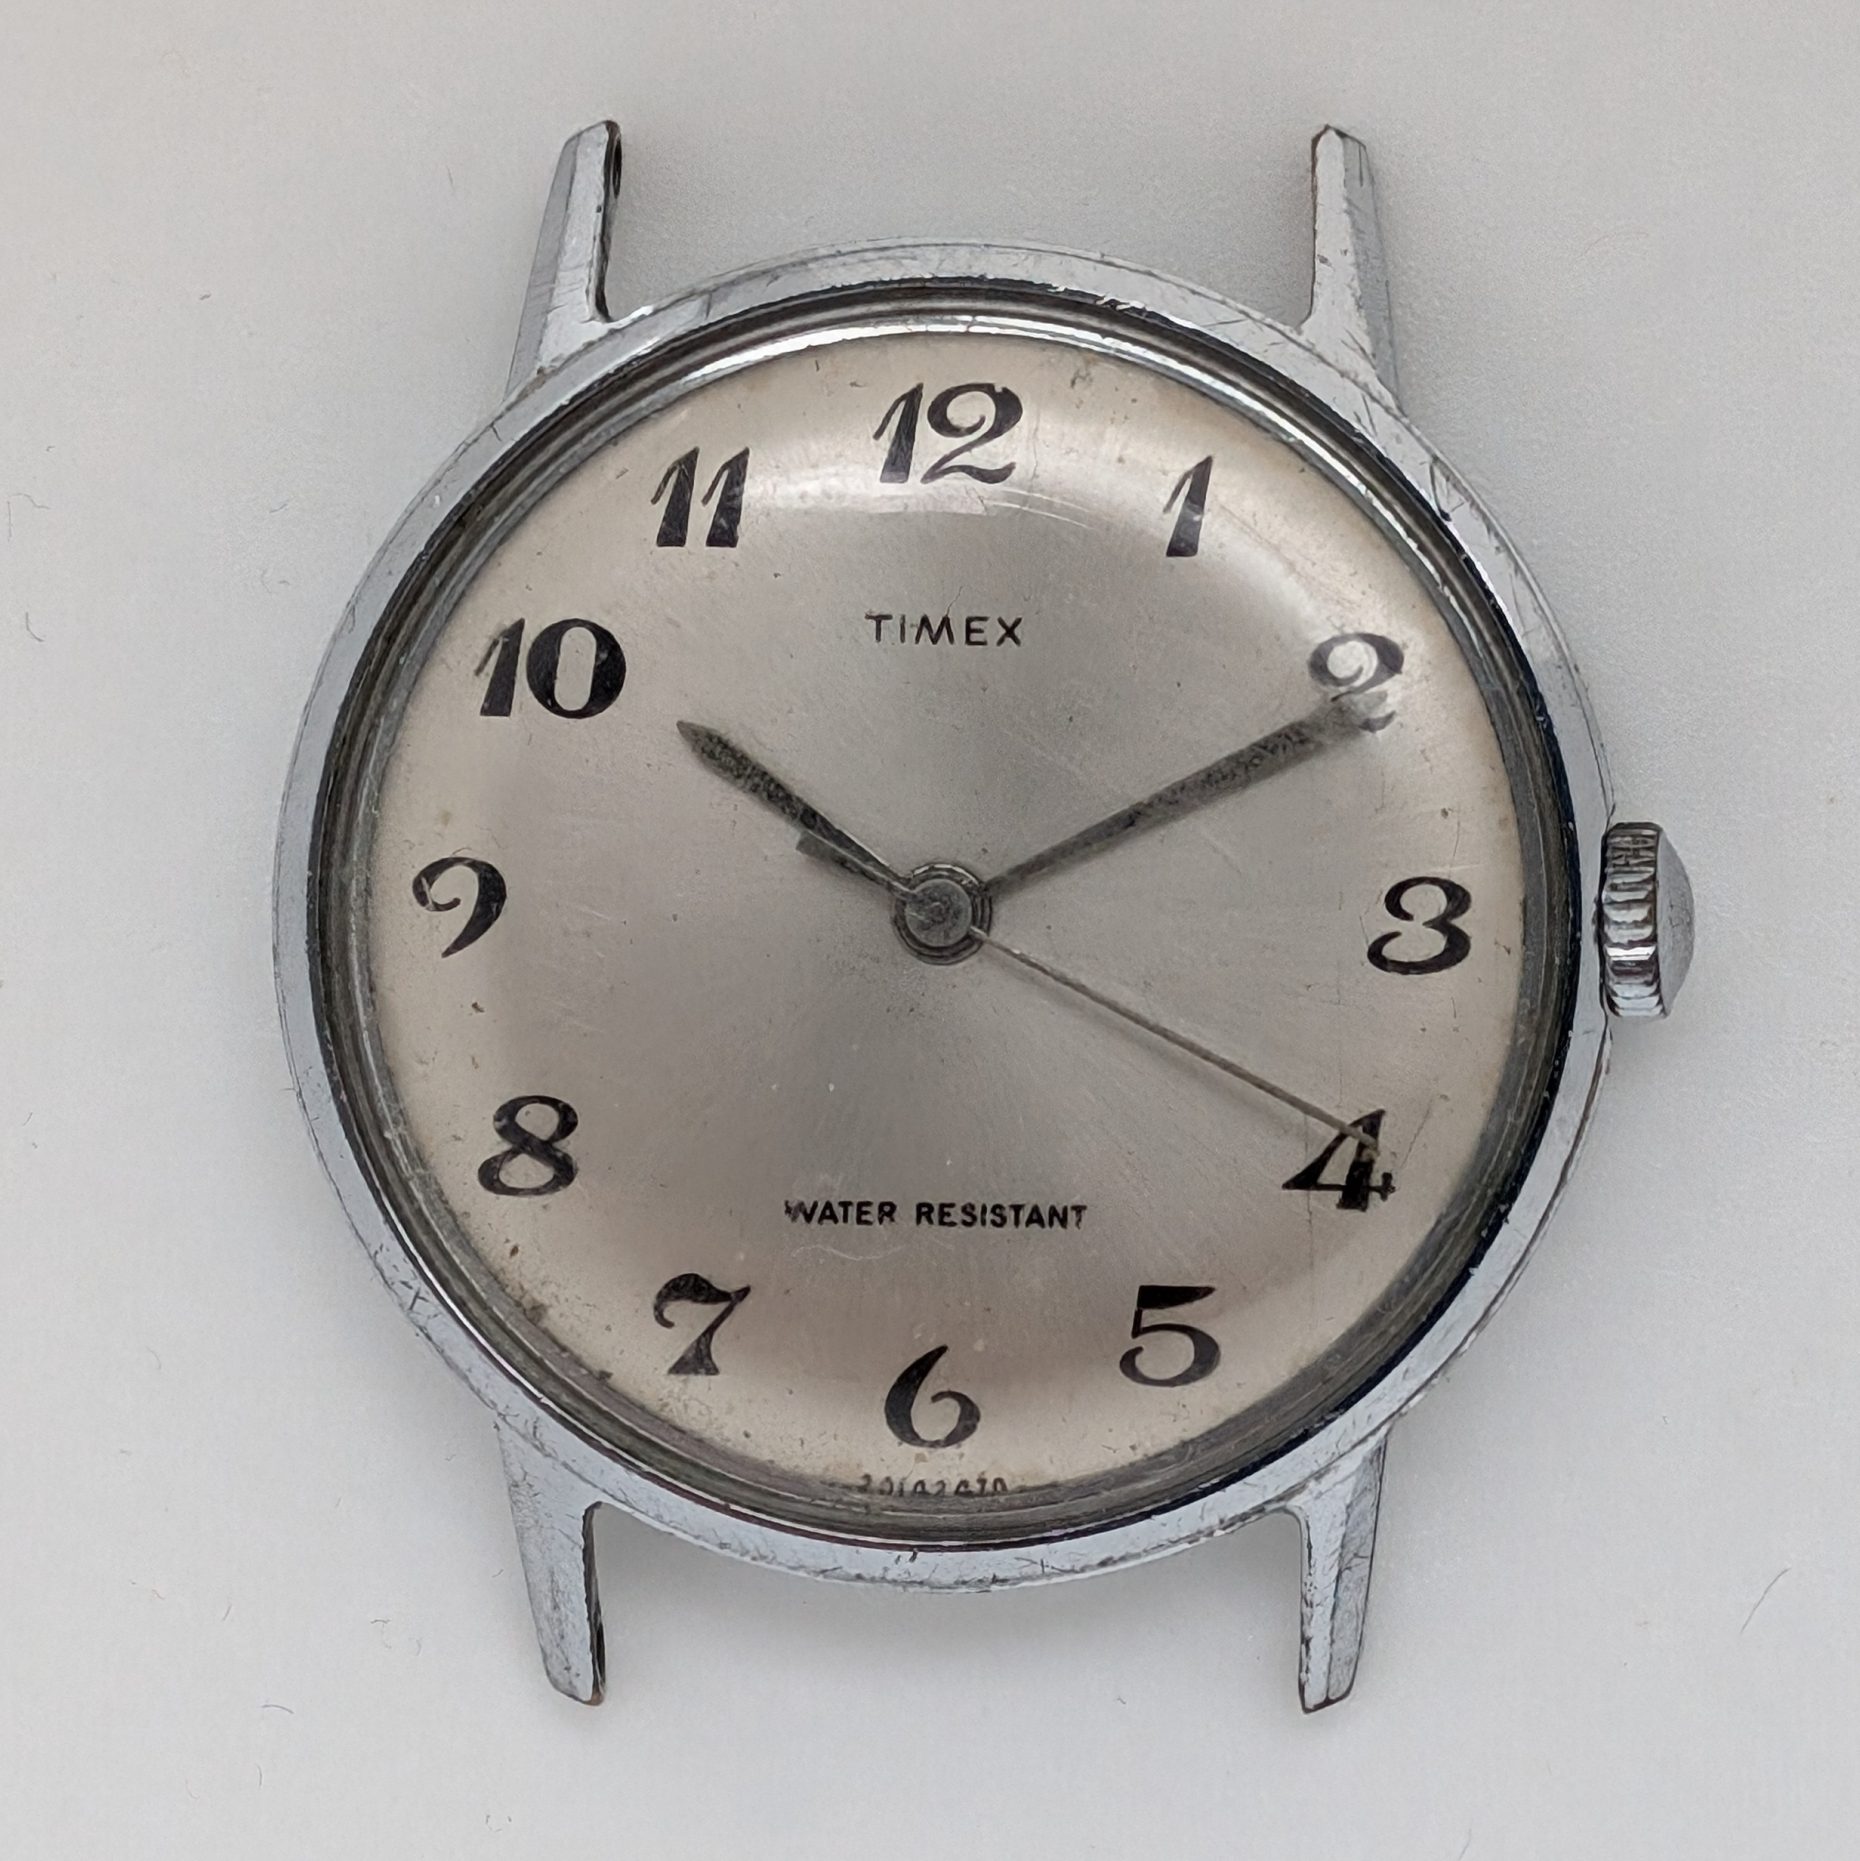 Timex Marlin 2014 2470 [1970]